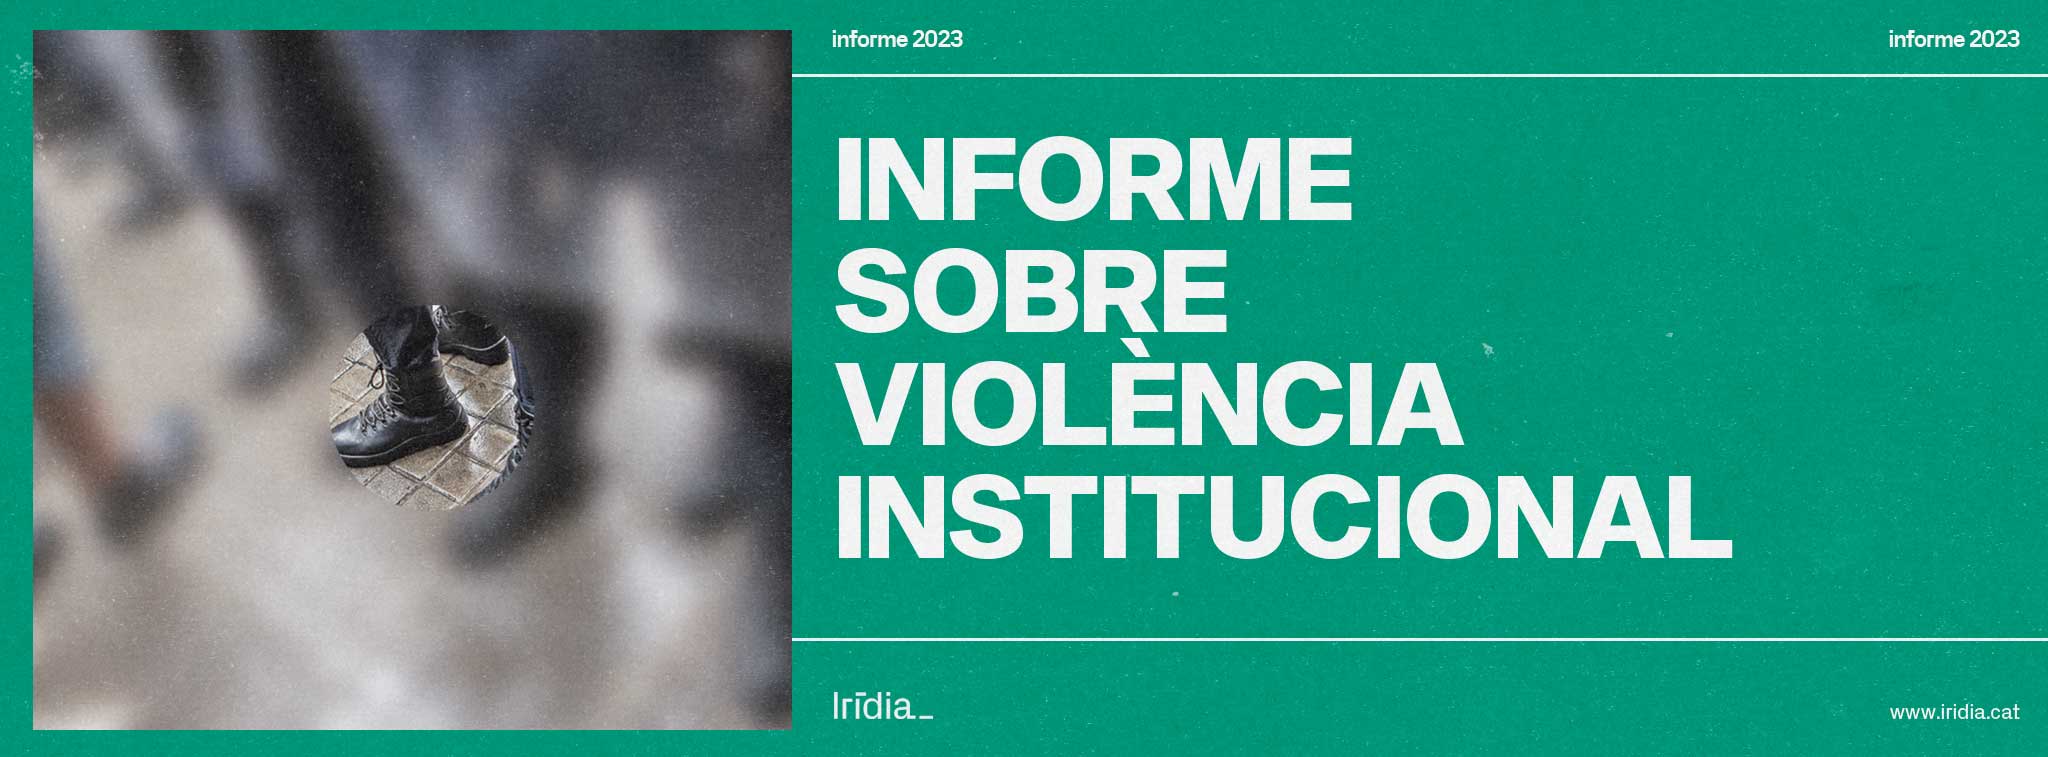 Informe sobre violència institucional 2023